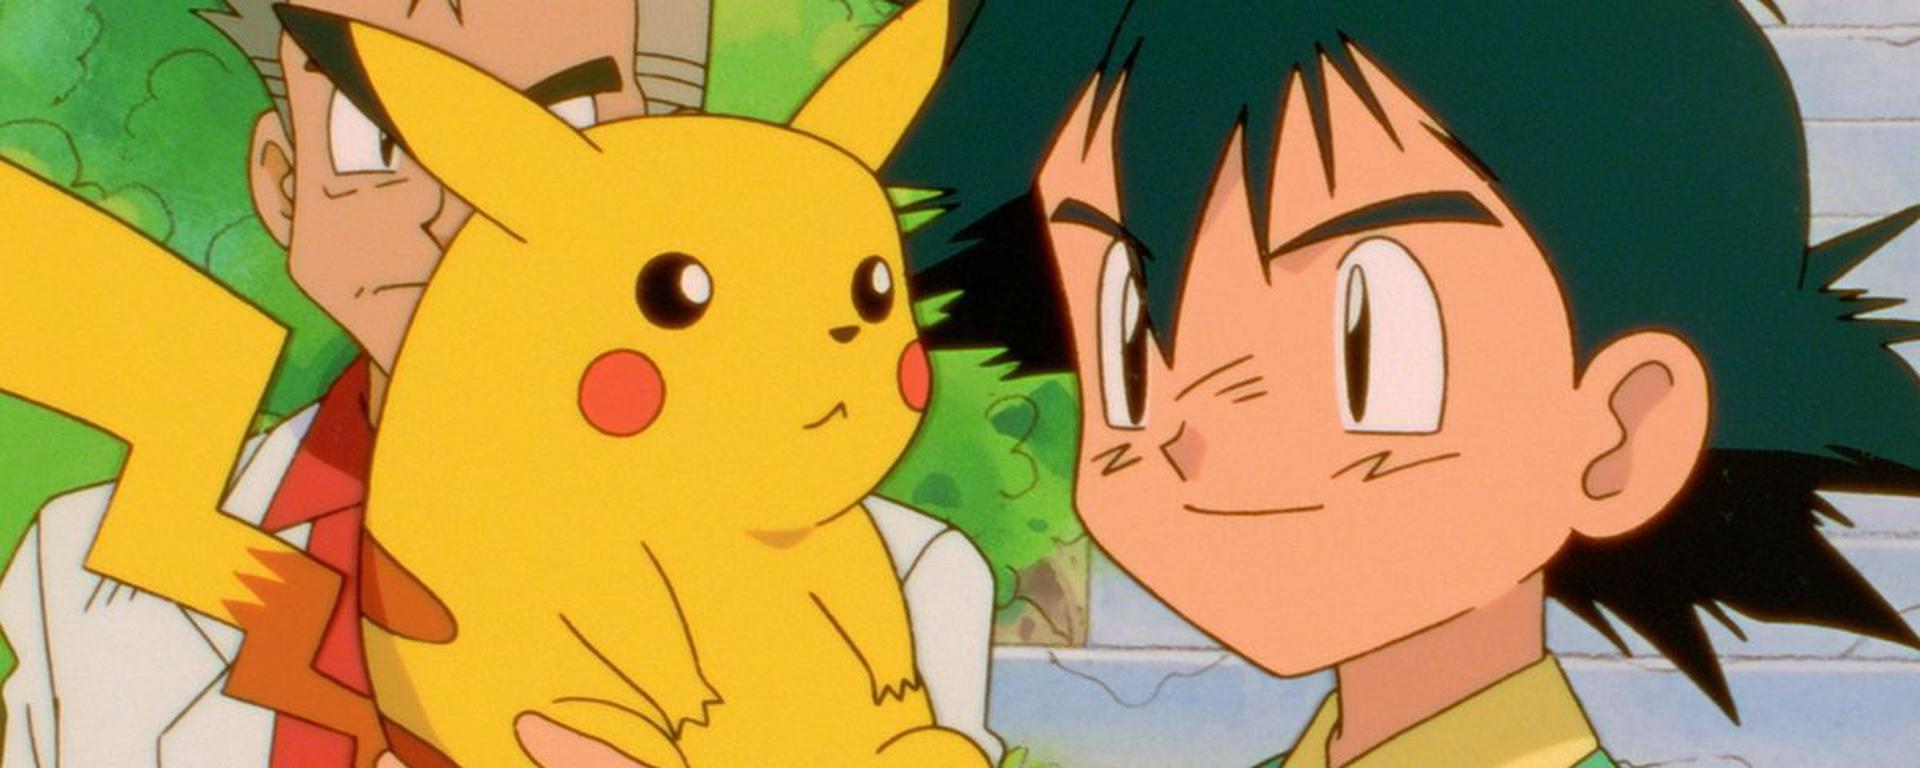 Adiós, “Pokémon”: así fue el paso por Perú de la serie ahora que llega a su fin tras 26 años